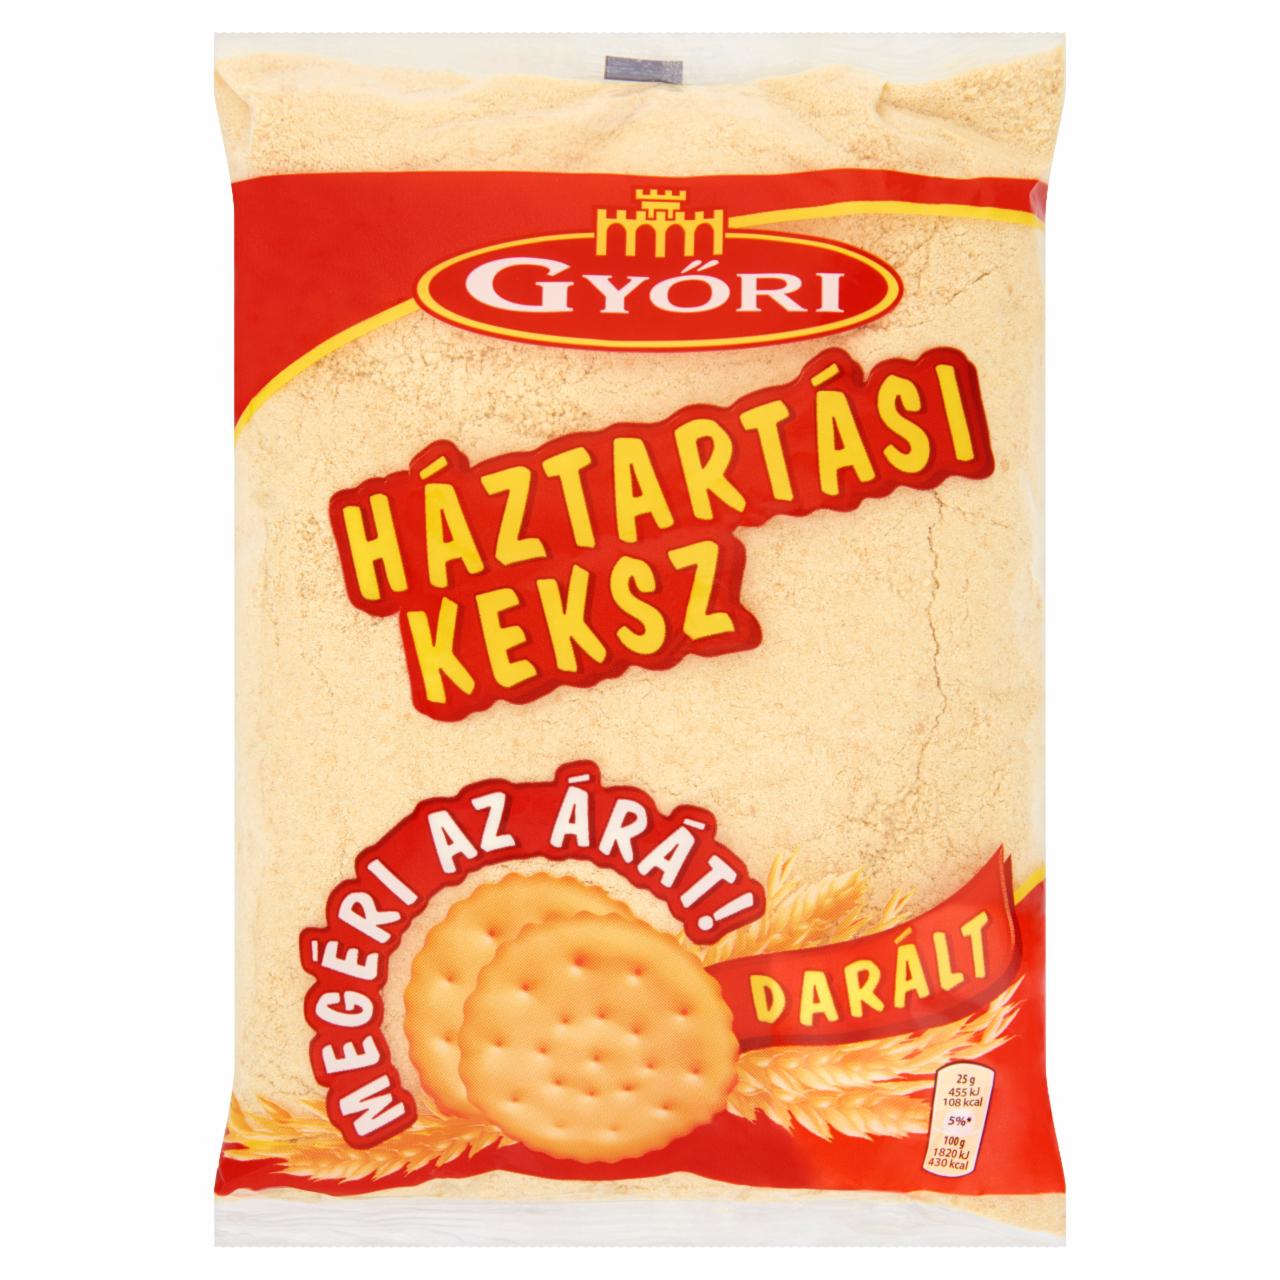 Képek - Győri darált háztartási keksz 500 g